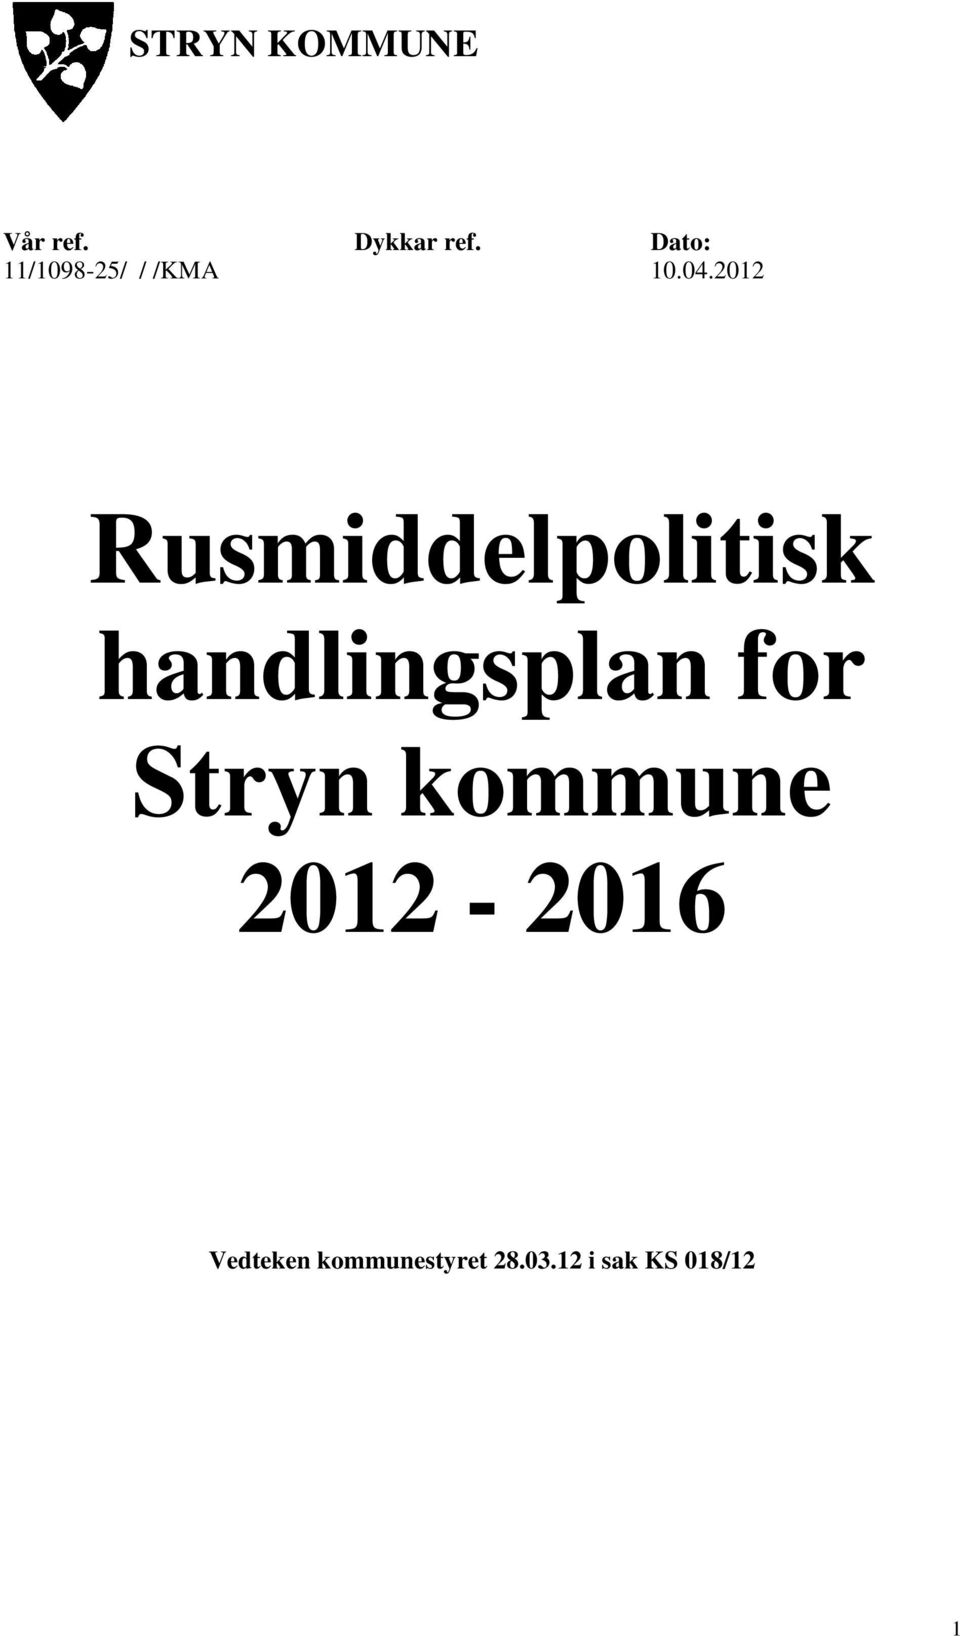 2012 Rusmiddelpolitisk handlingsplan for